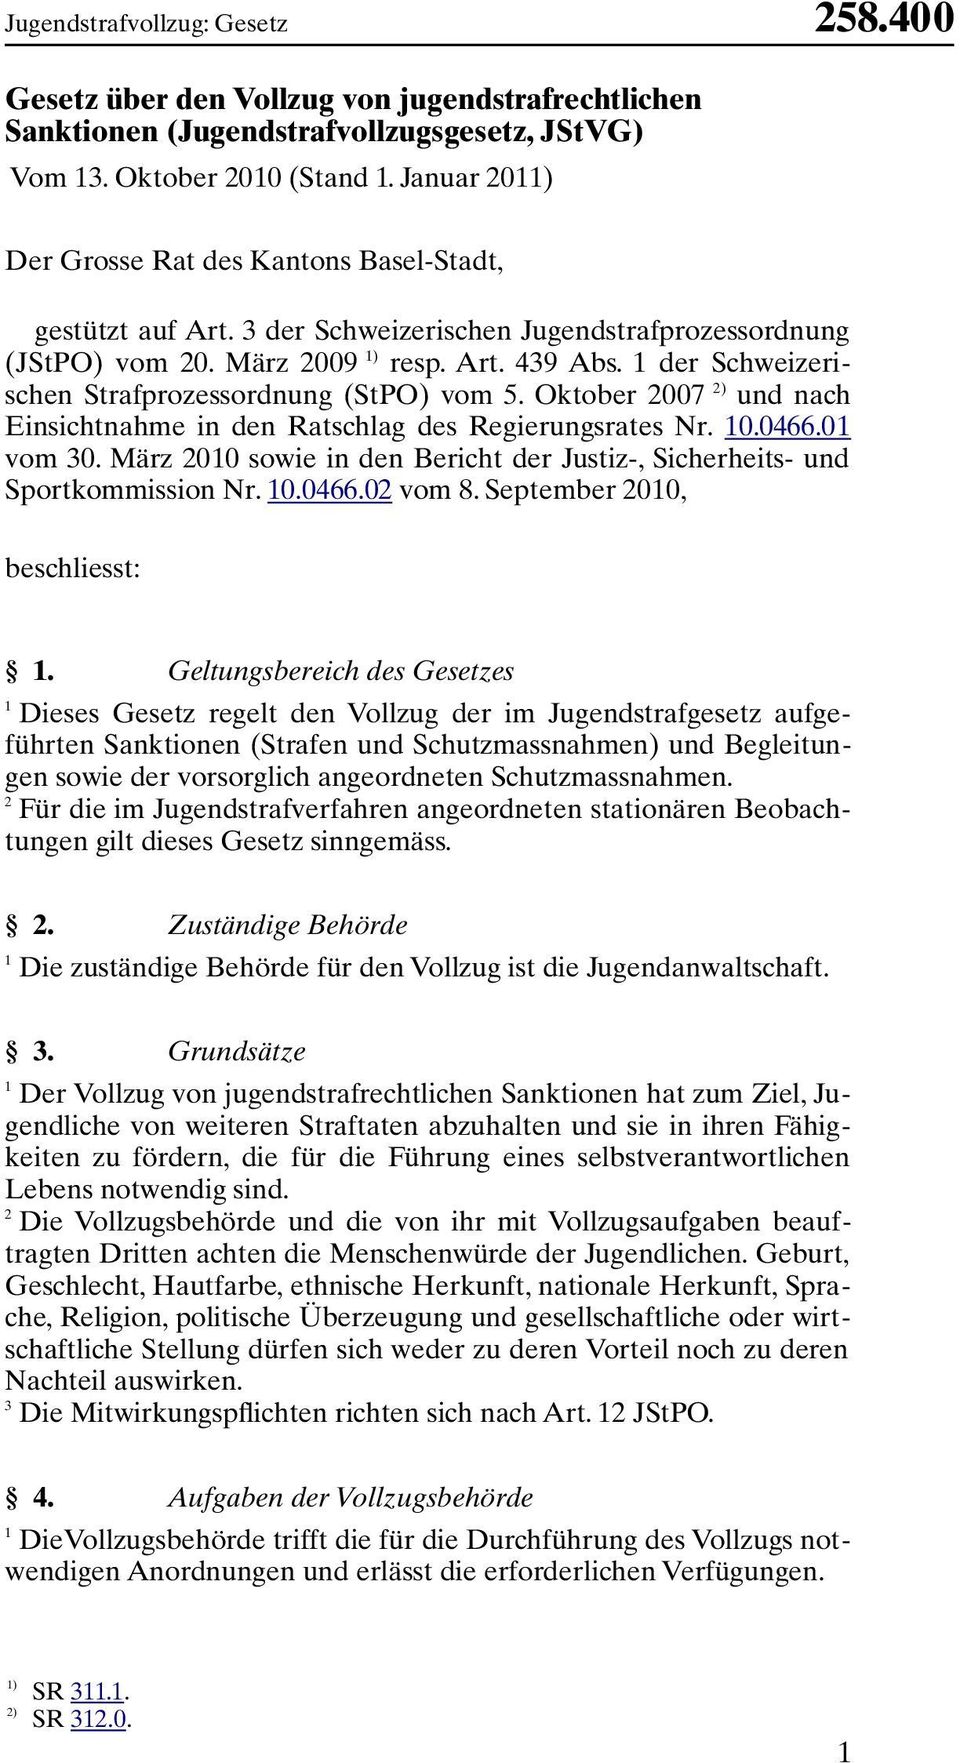 der Schweizerischen Strafprozessordnung (StPO) vom 5. Oktober 007 ) und nach Einsichtnahme in den Ratschlag des Regierungsrates Nr. 0.066.0 vom 0.